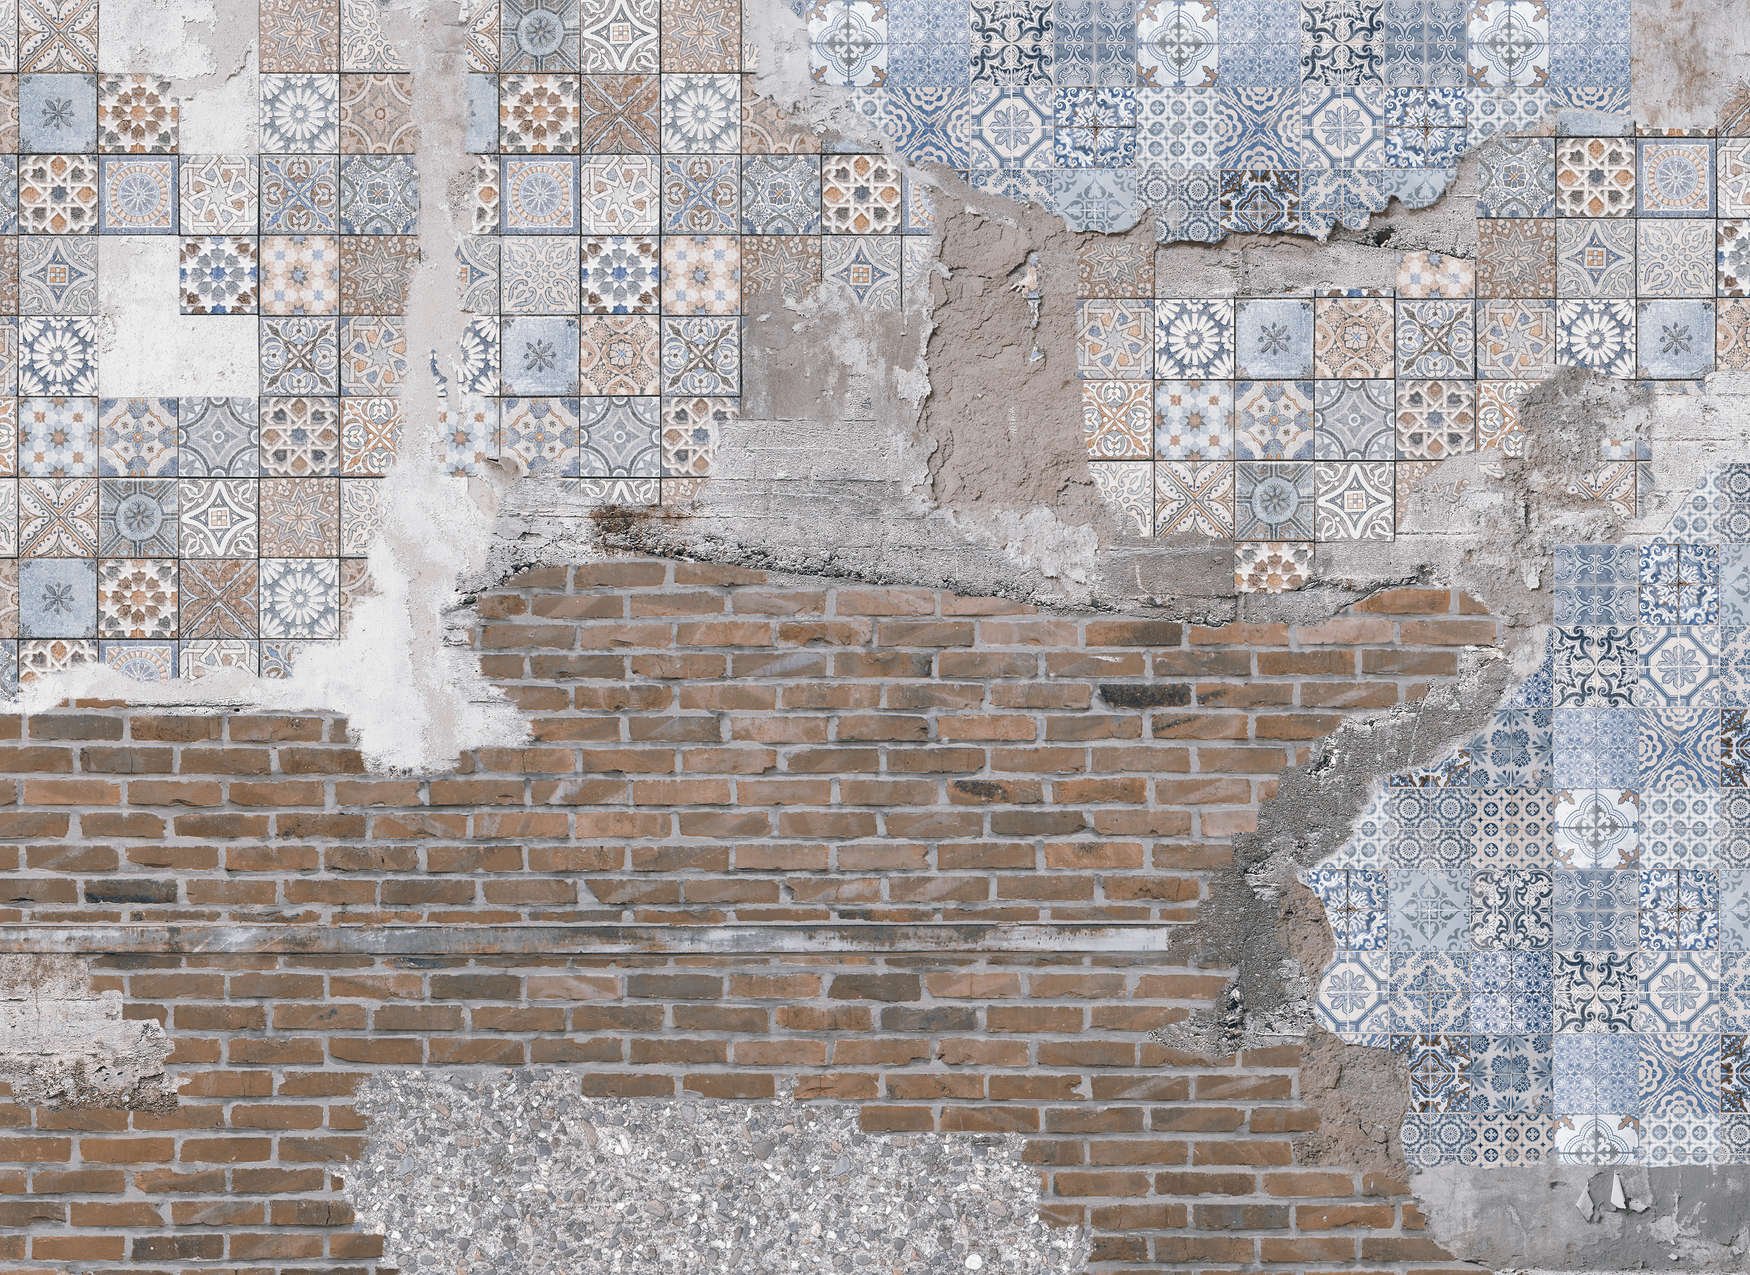             Mural Pared de Ladrillo con Piedras de Mosaico Cancellazionedas - Marrón, Azul, Gris
        